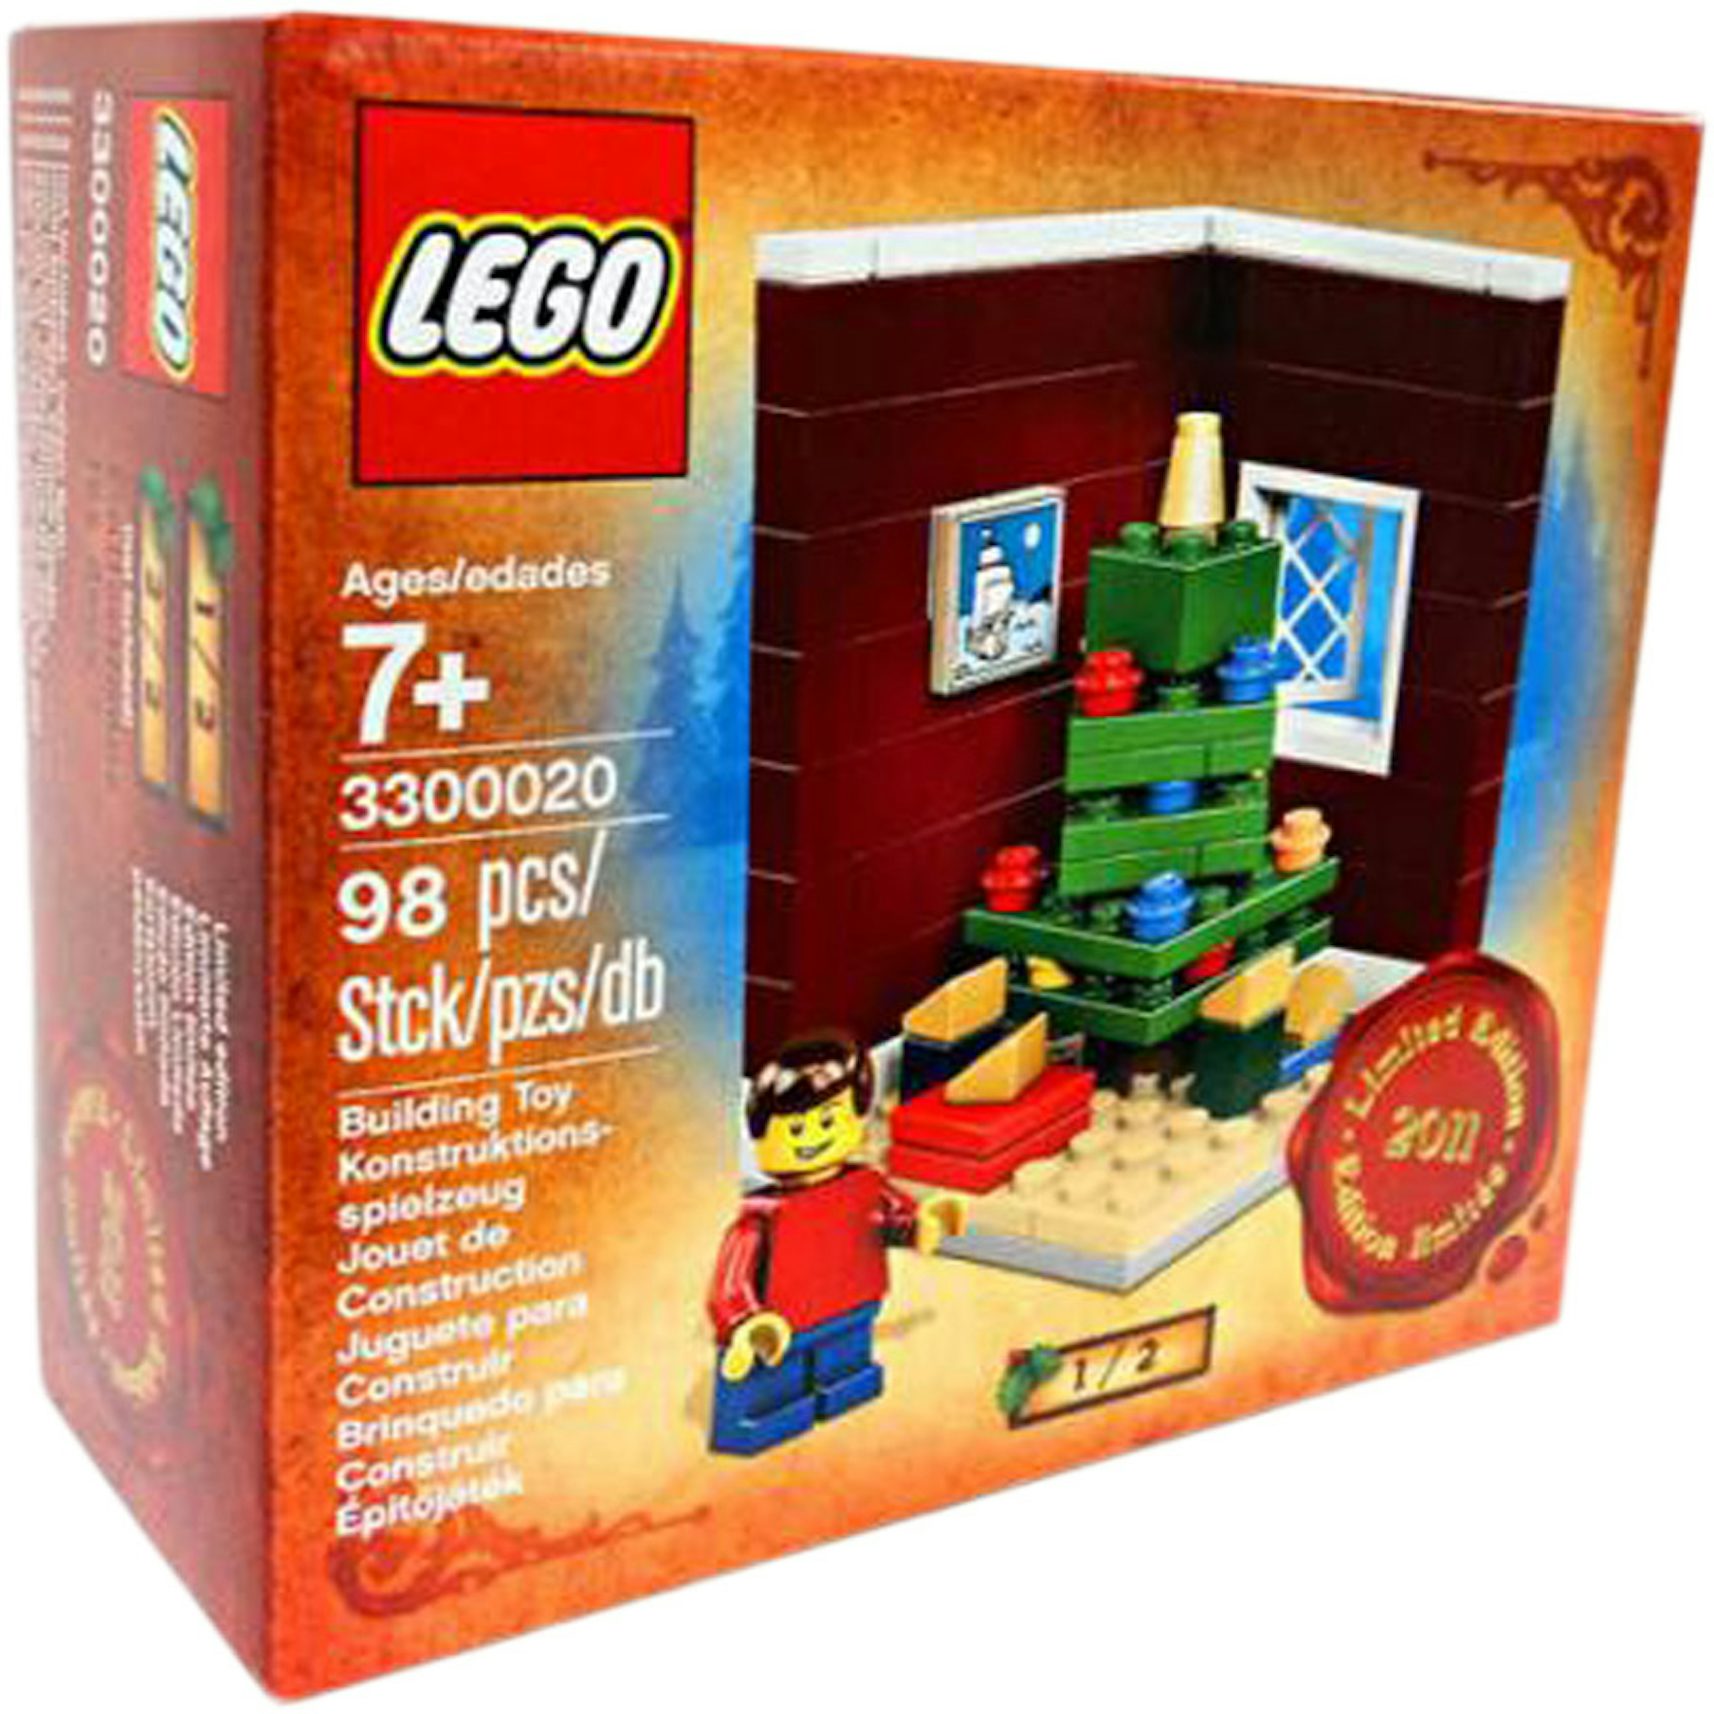 LEGO Christmas Morning Set 3300020 - US